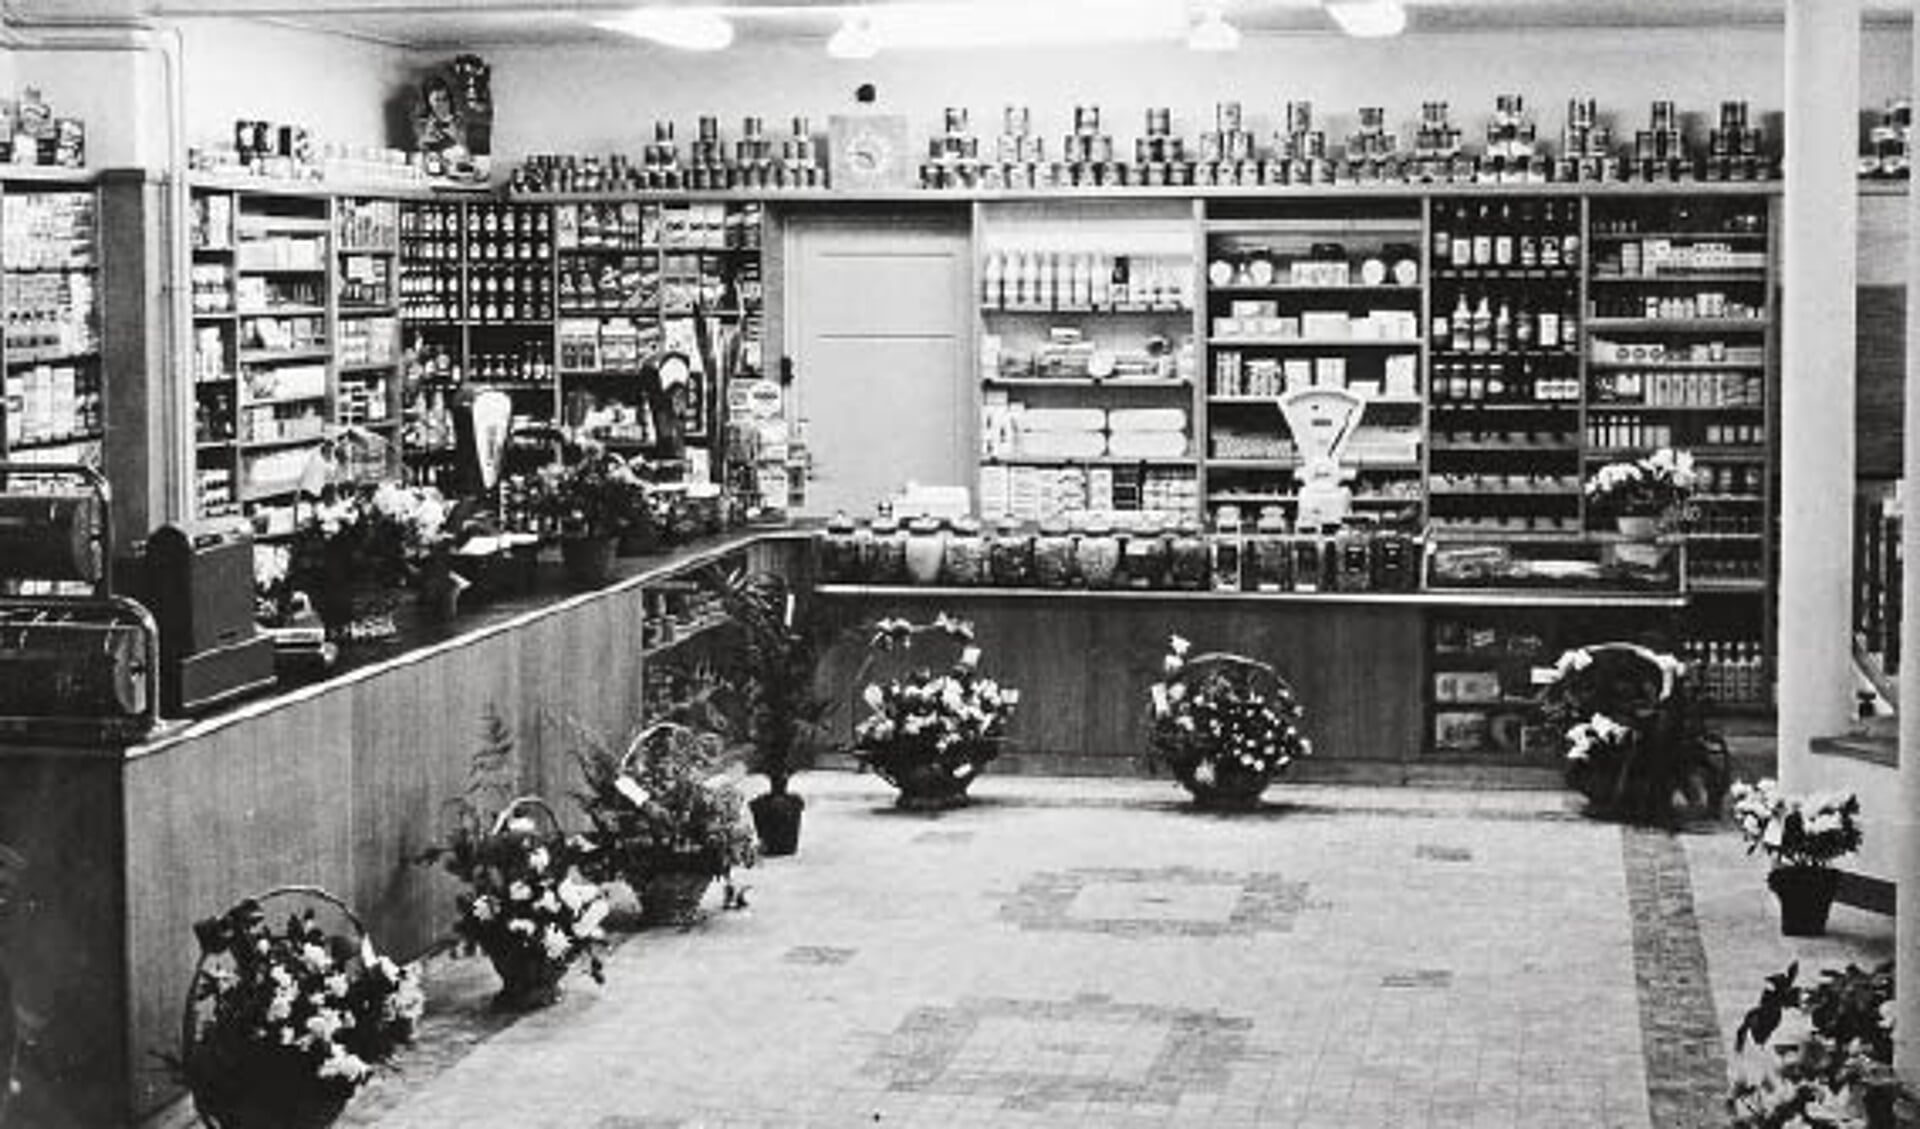 Het interieur van de gloednieuwe winkel in december 1953.